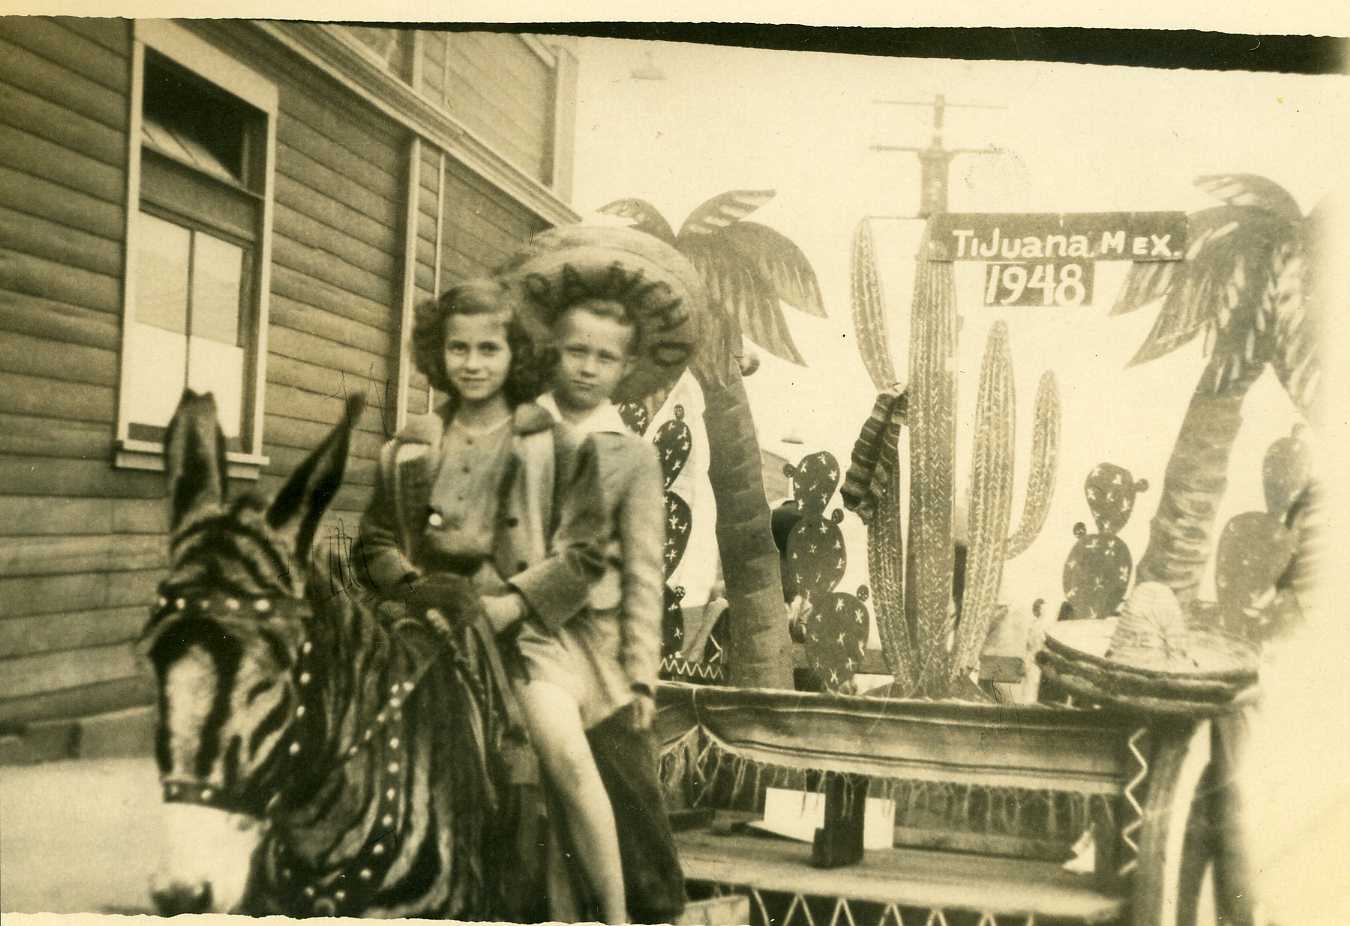 Barbara & Buck - TiJuana Mex 1948.jpg